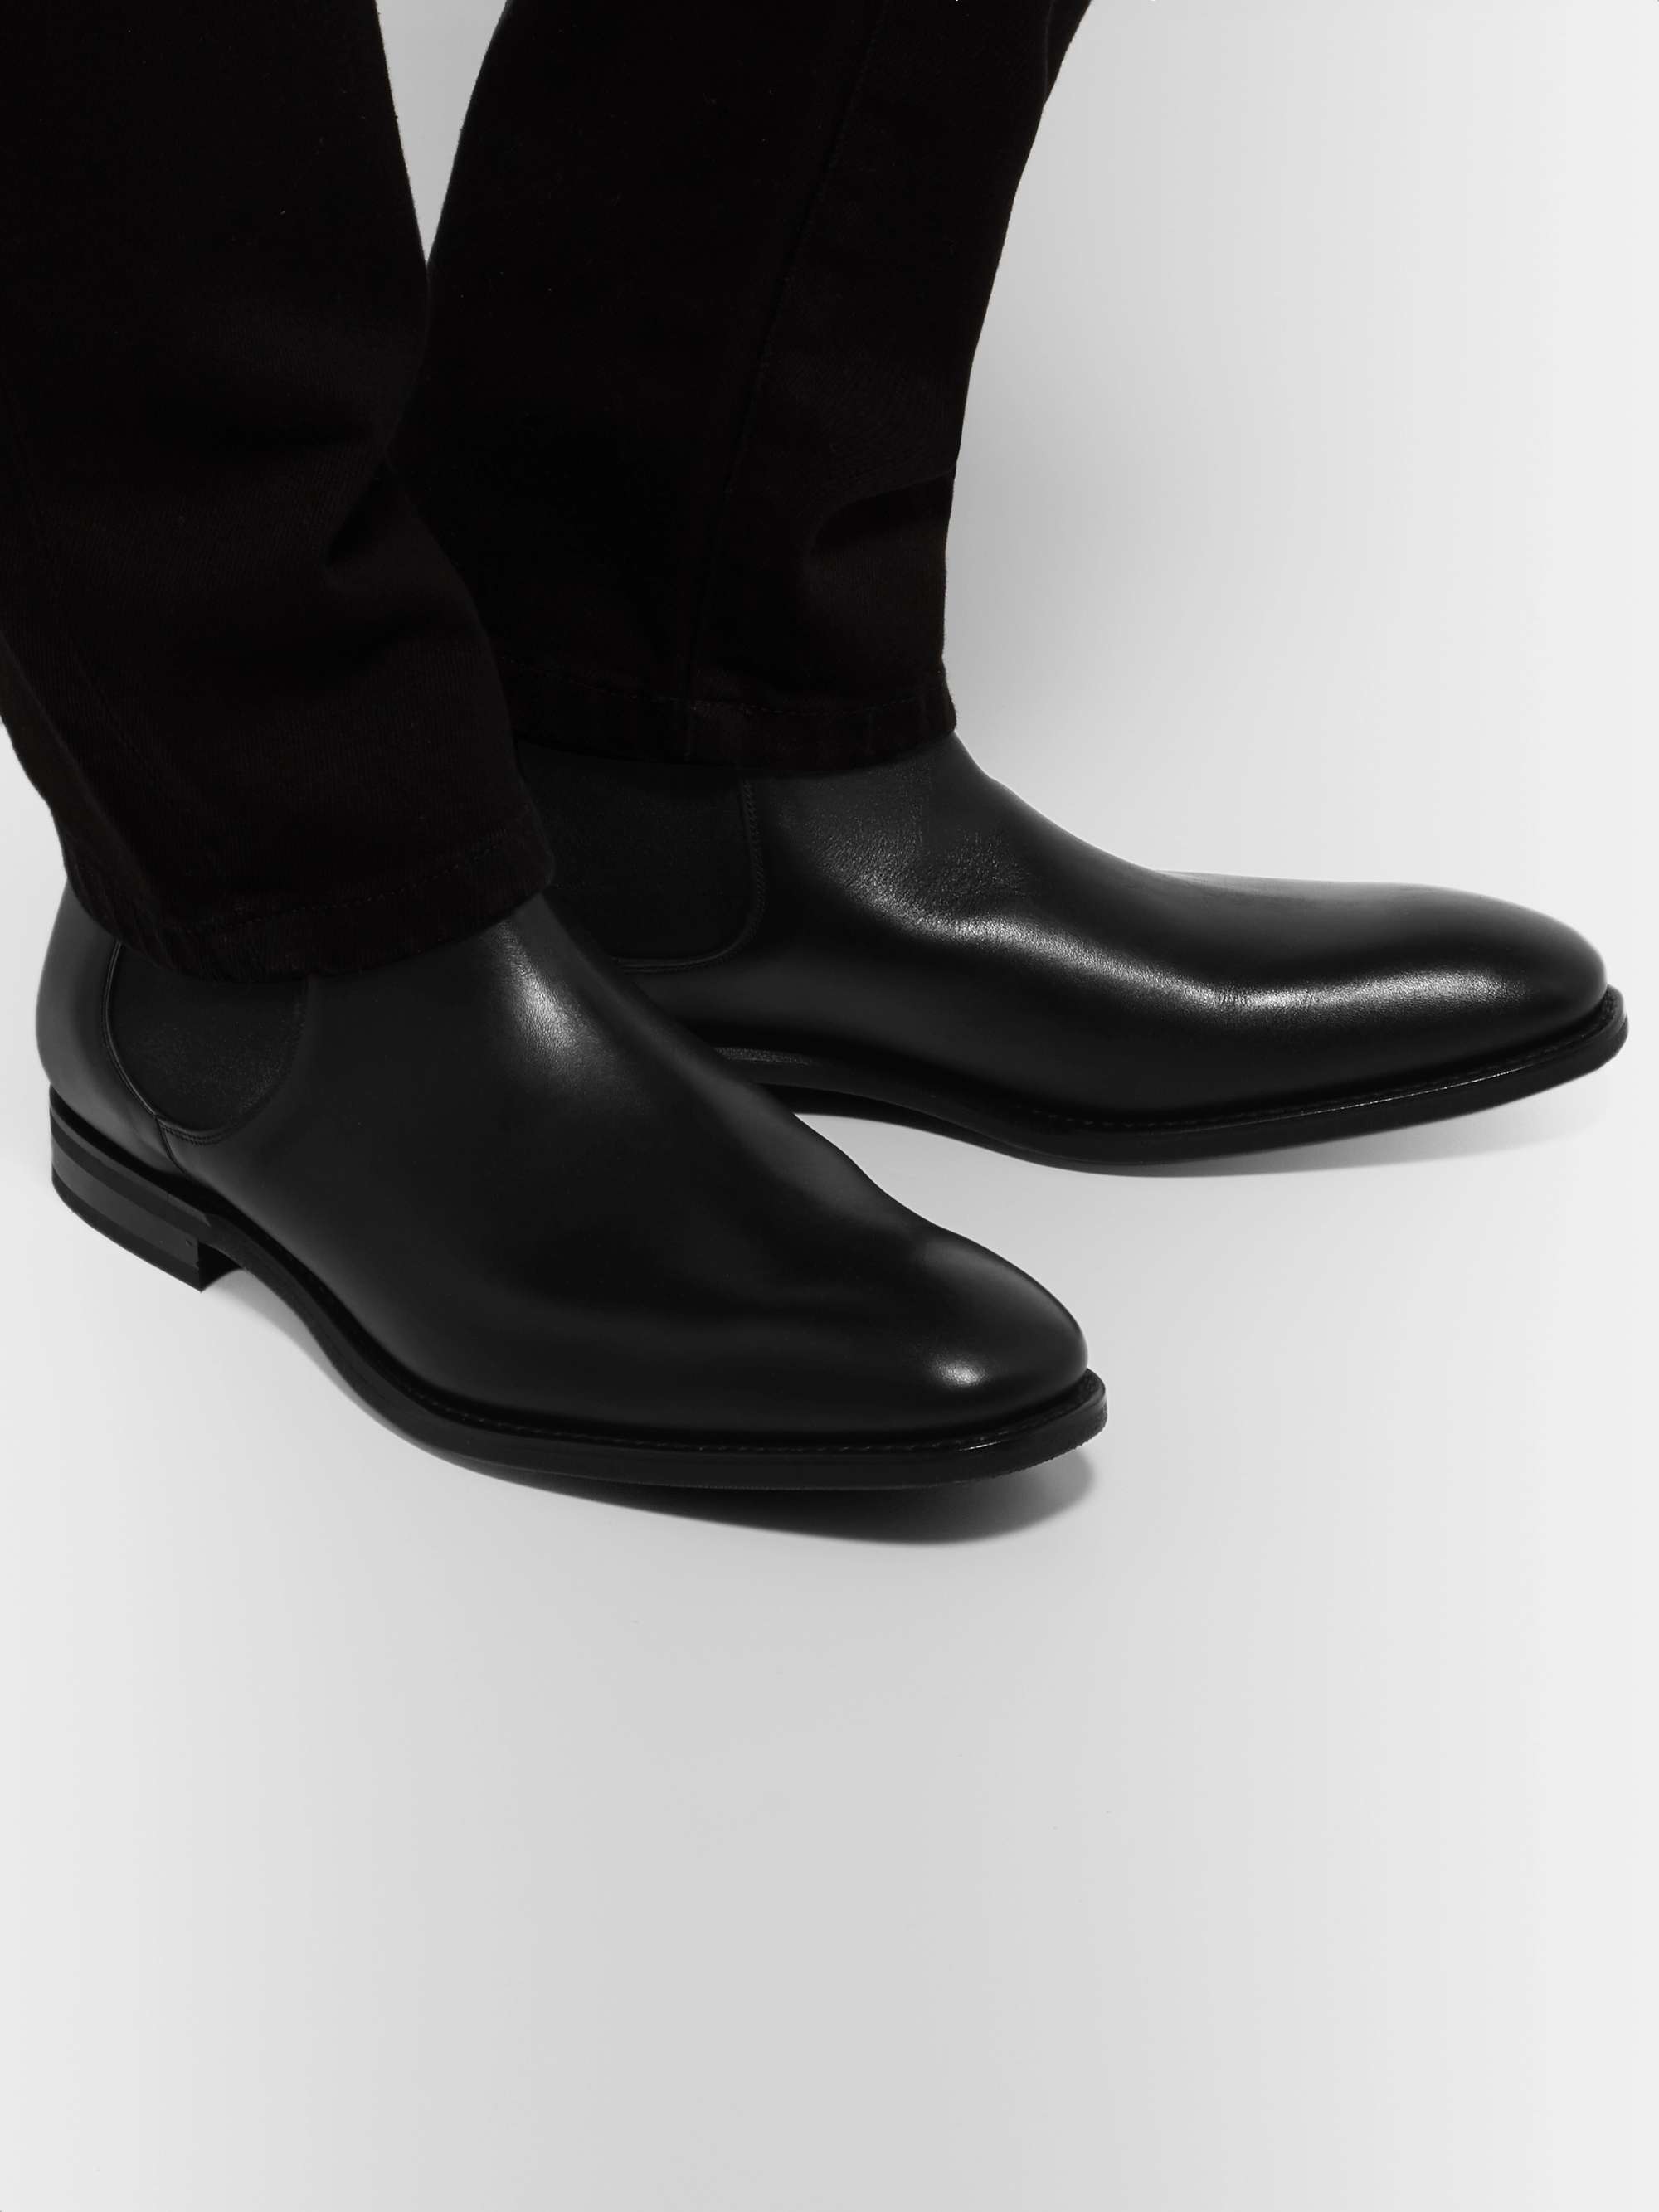 CHURCH'S Prenton Leather Chelsea Boots for Men | MR PORTER